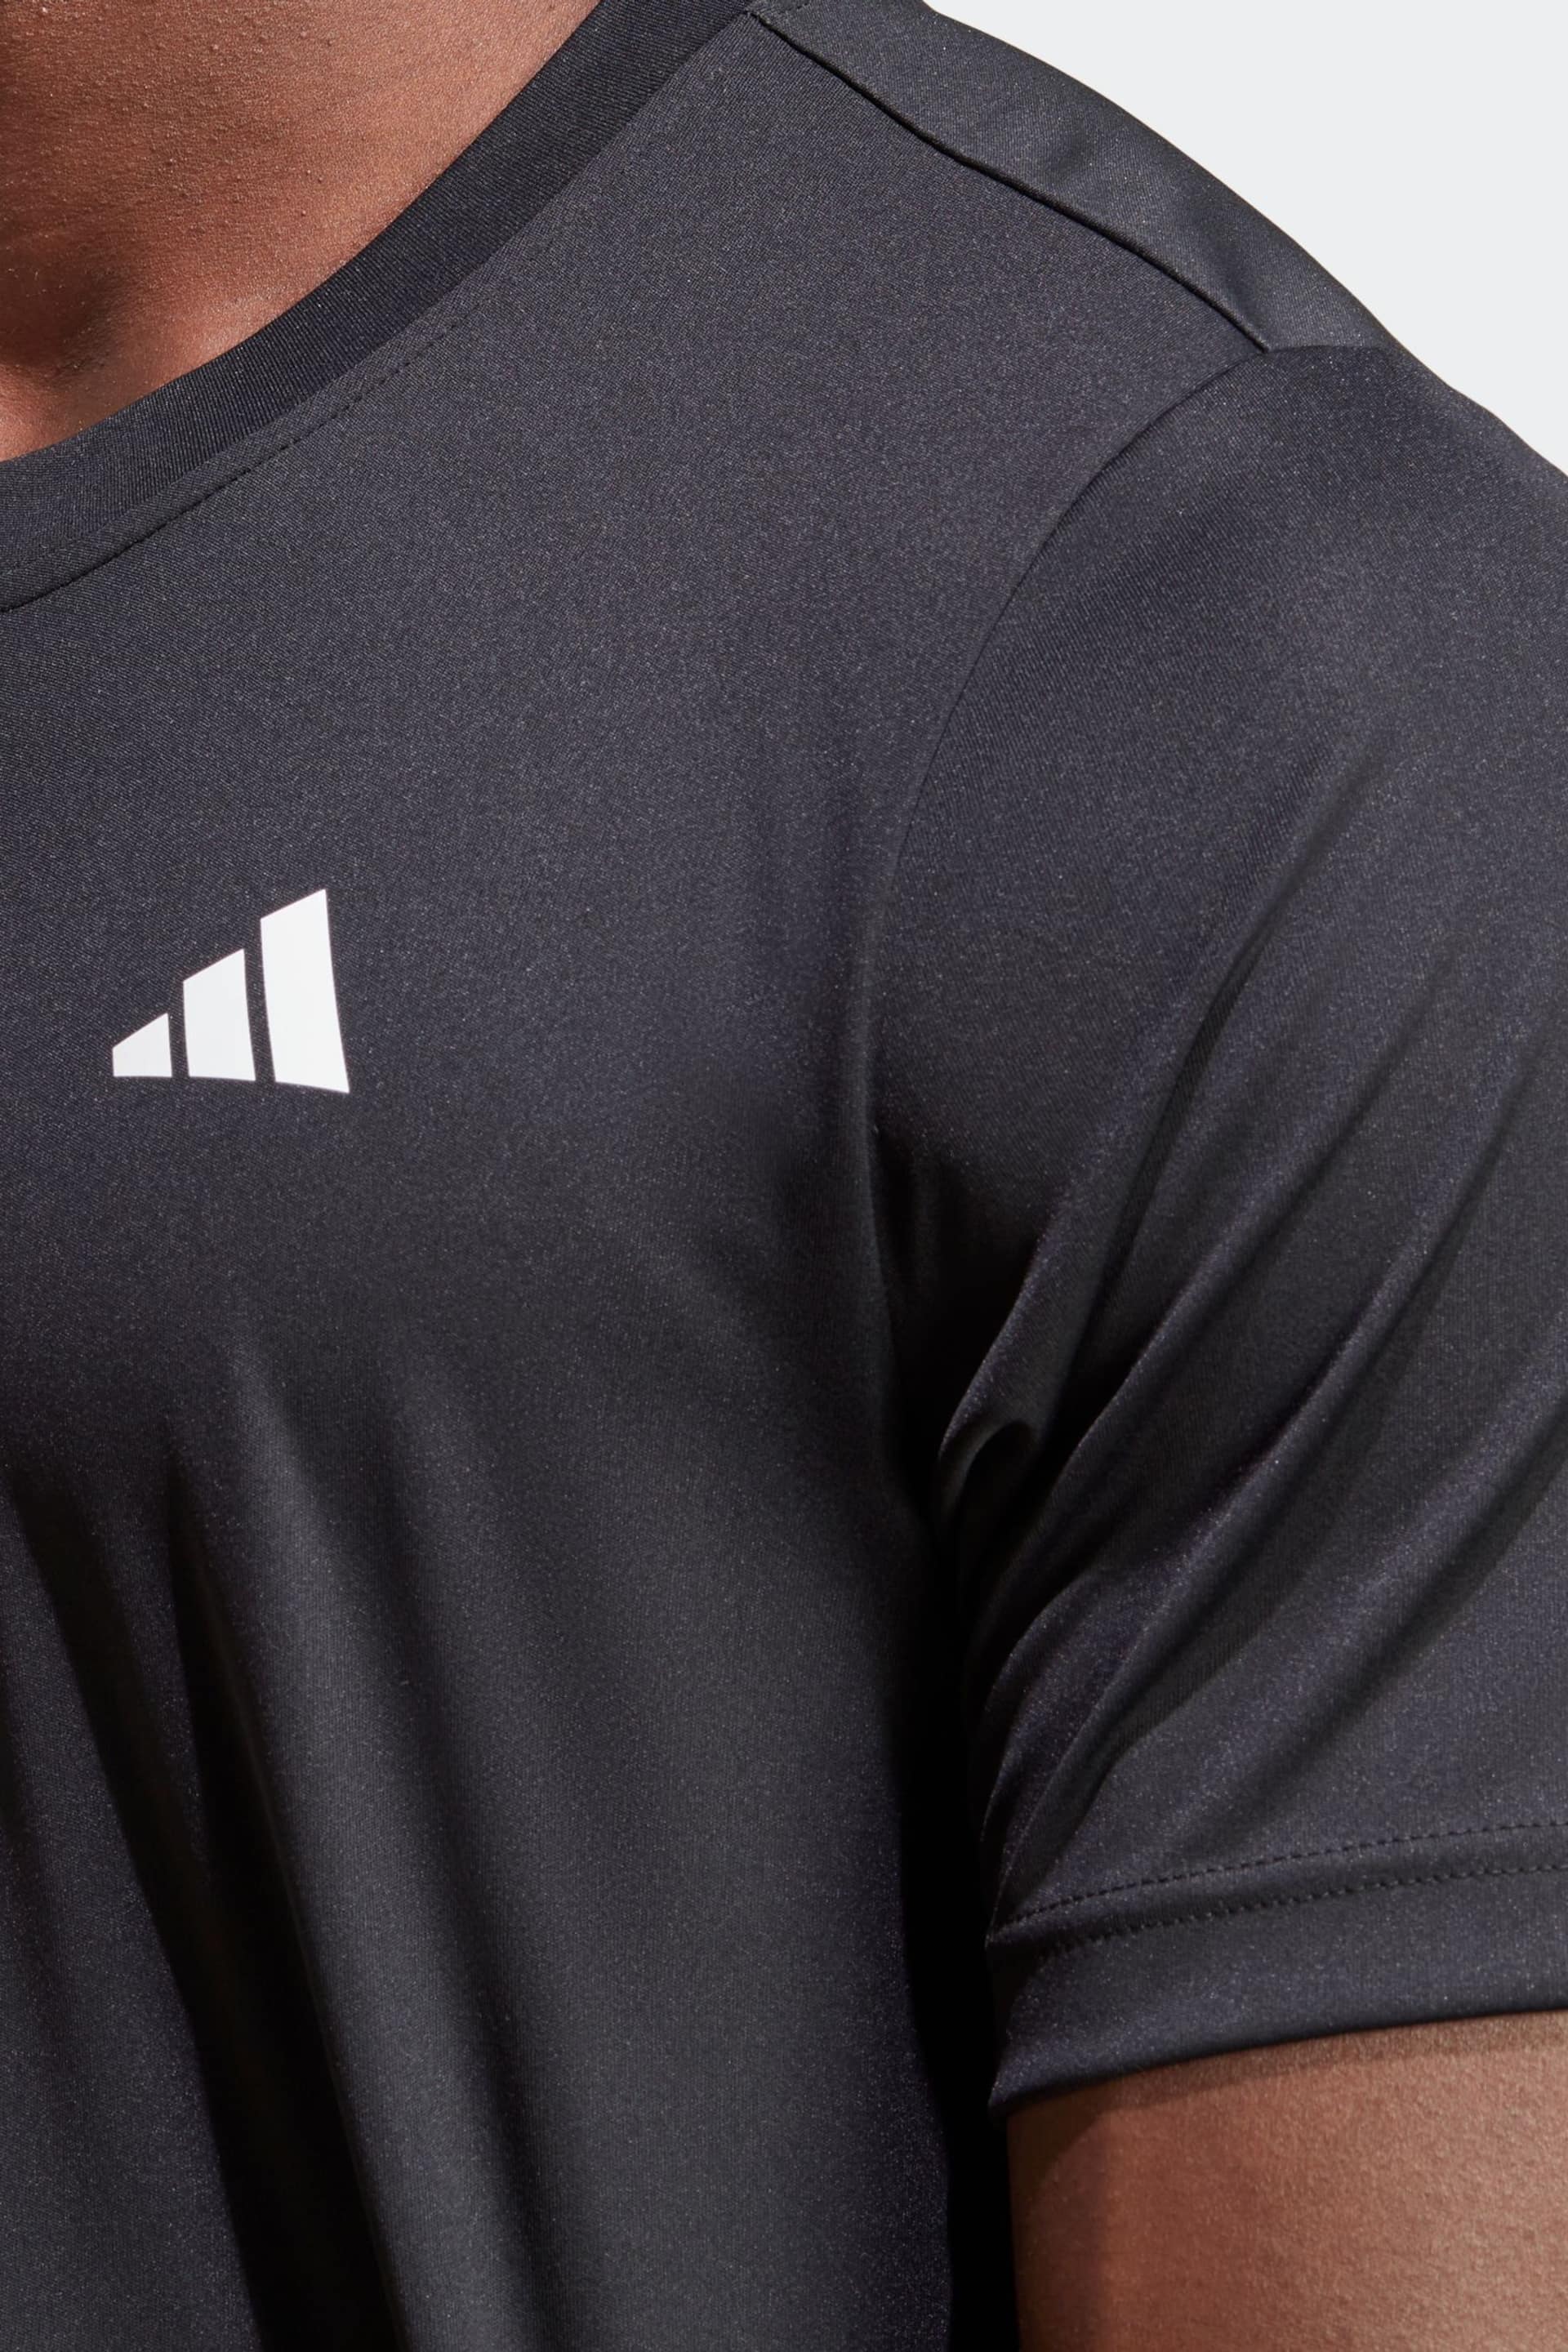 adidas Black Club 3-Stripes Tennis T-Shirt - Image 5 of 8